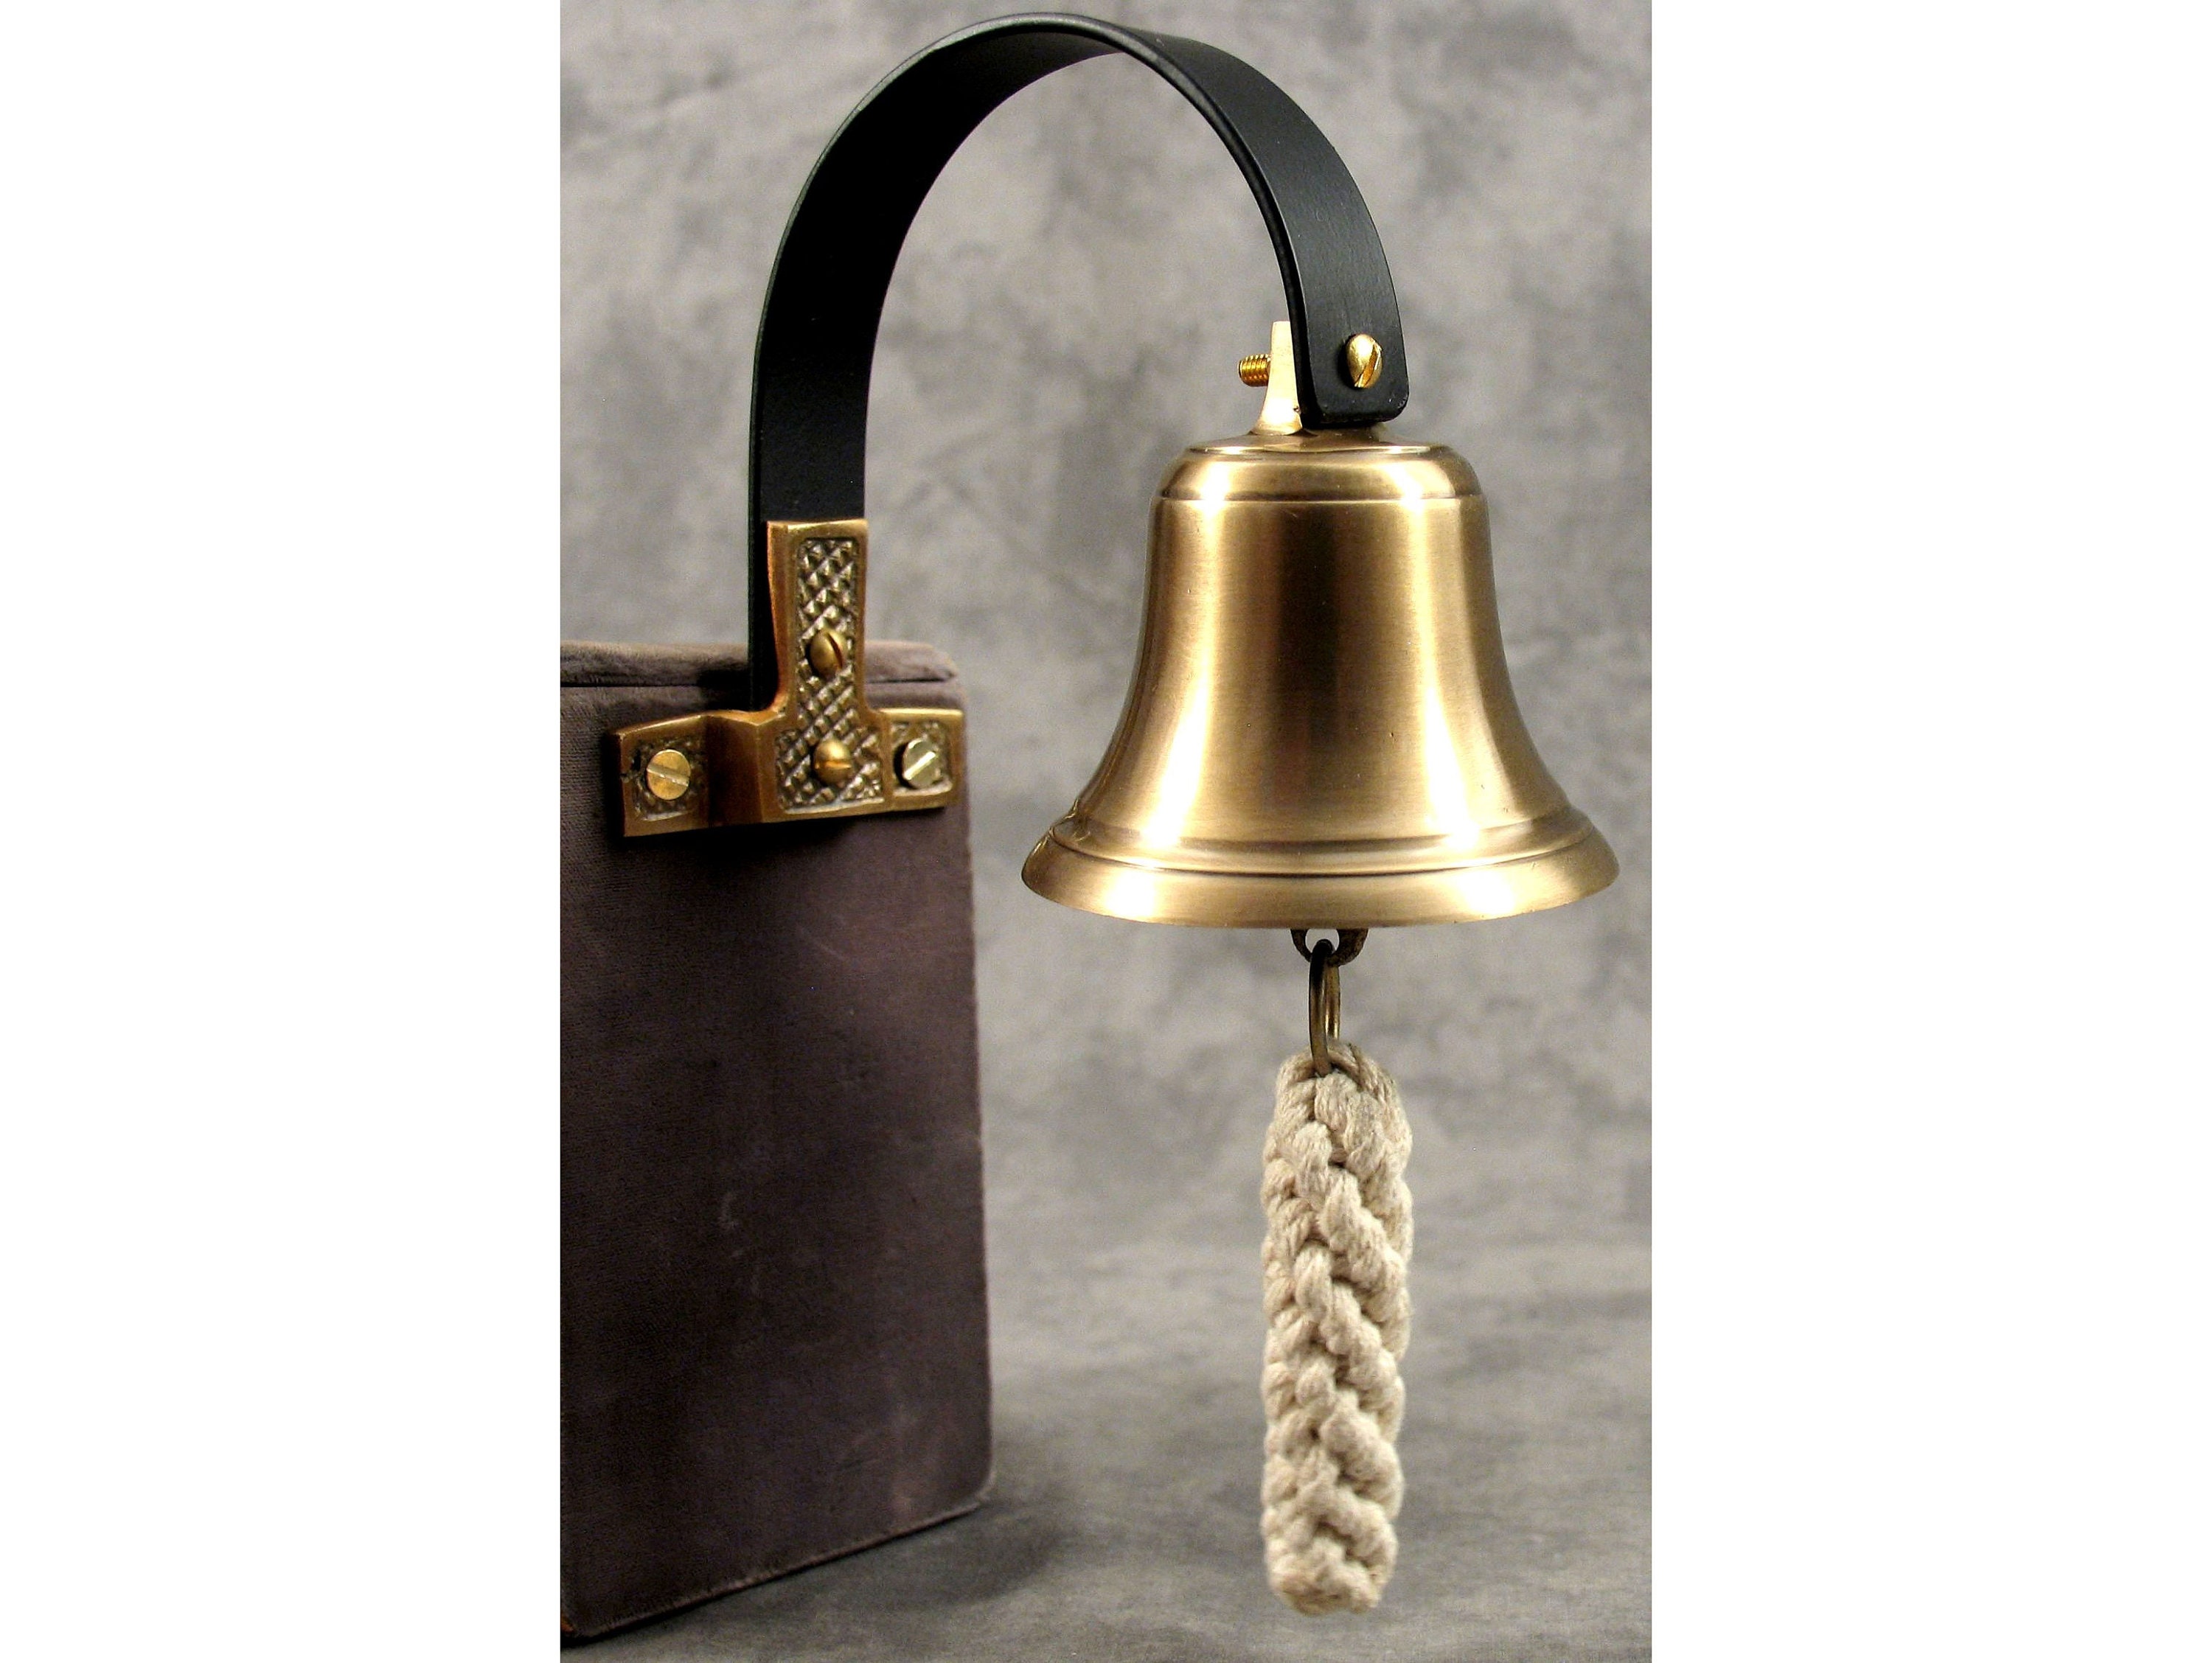 Traditional Doorbell Shop Keeper Door Alert Bell Retail Store Bell^ Vintage  R8U4 